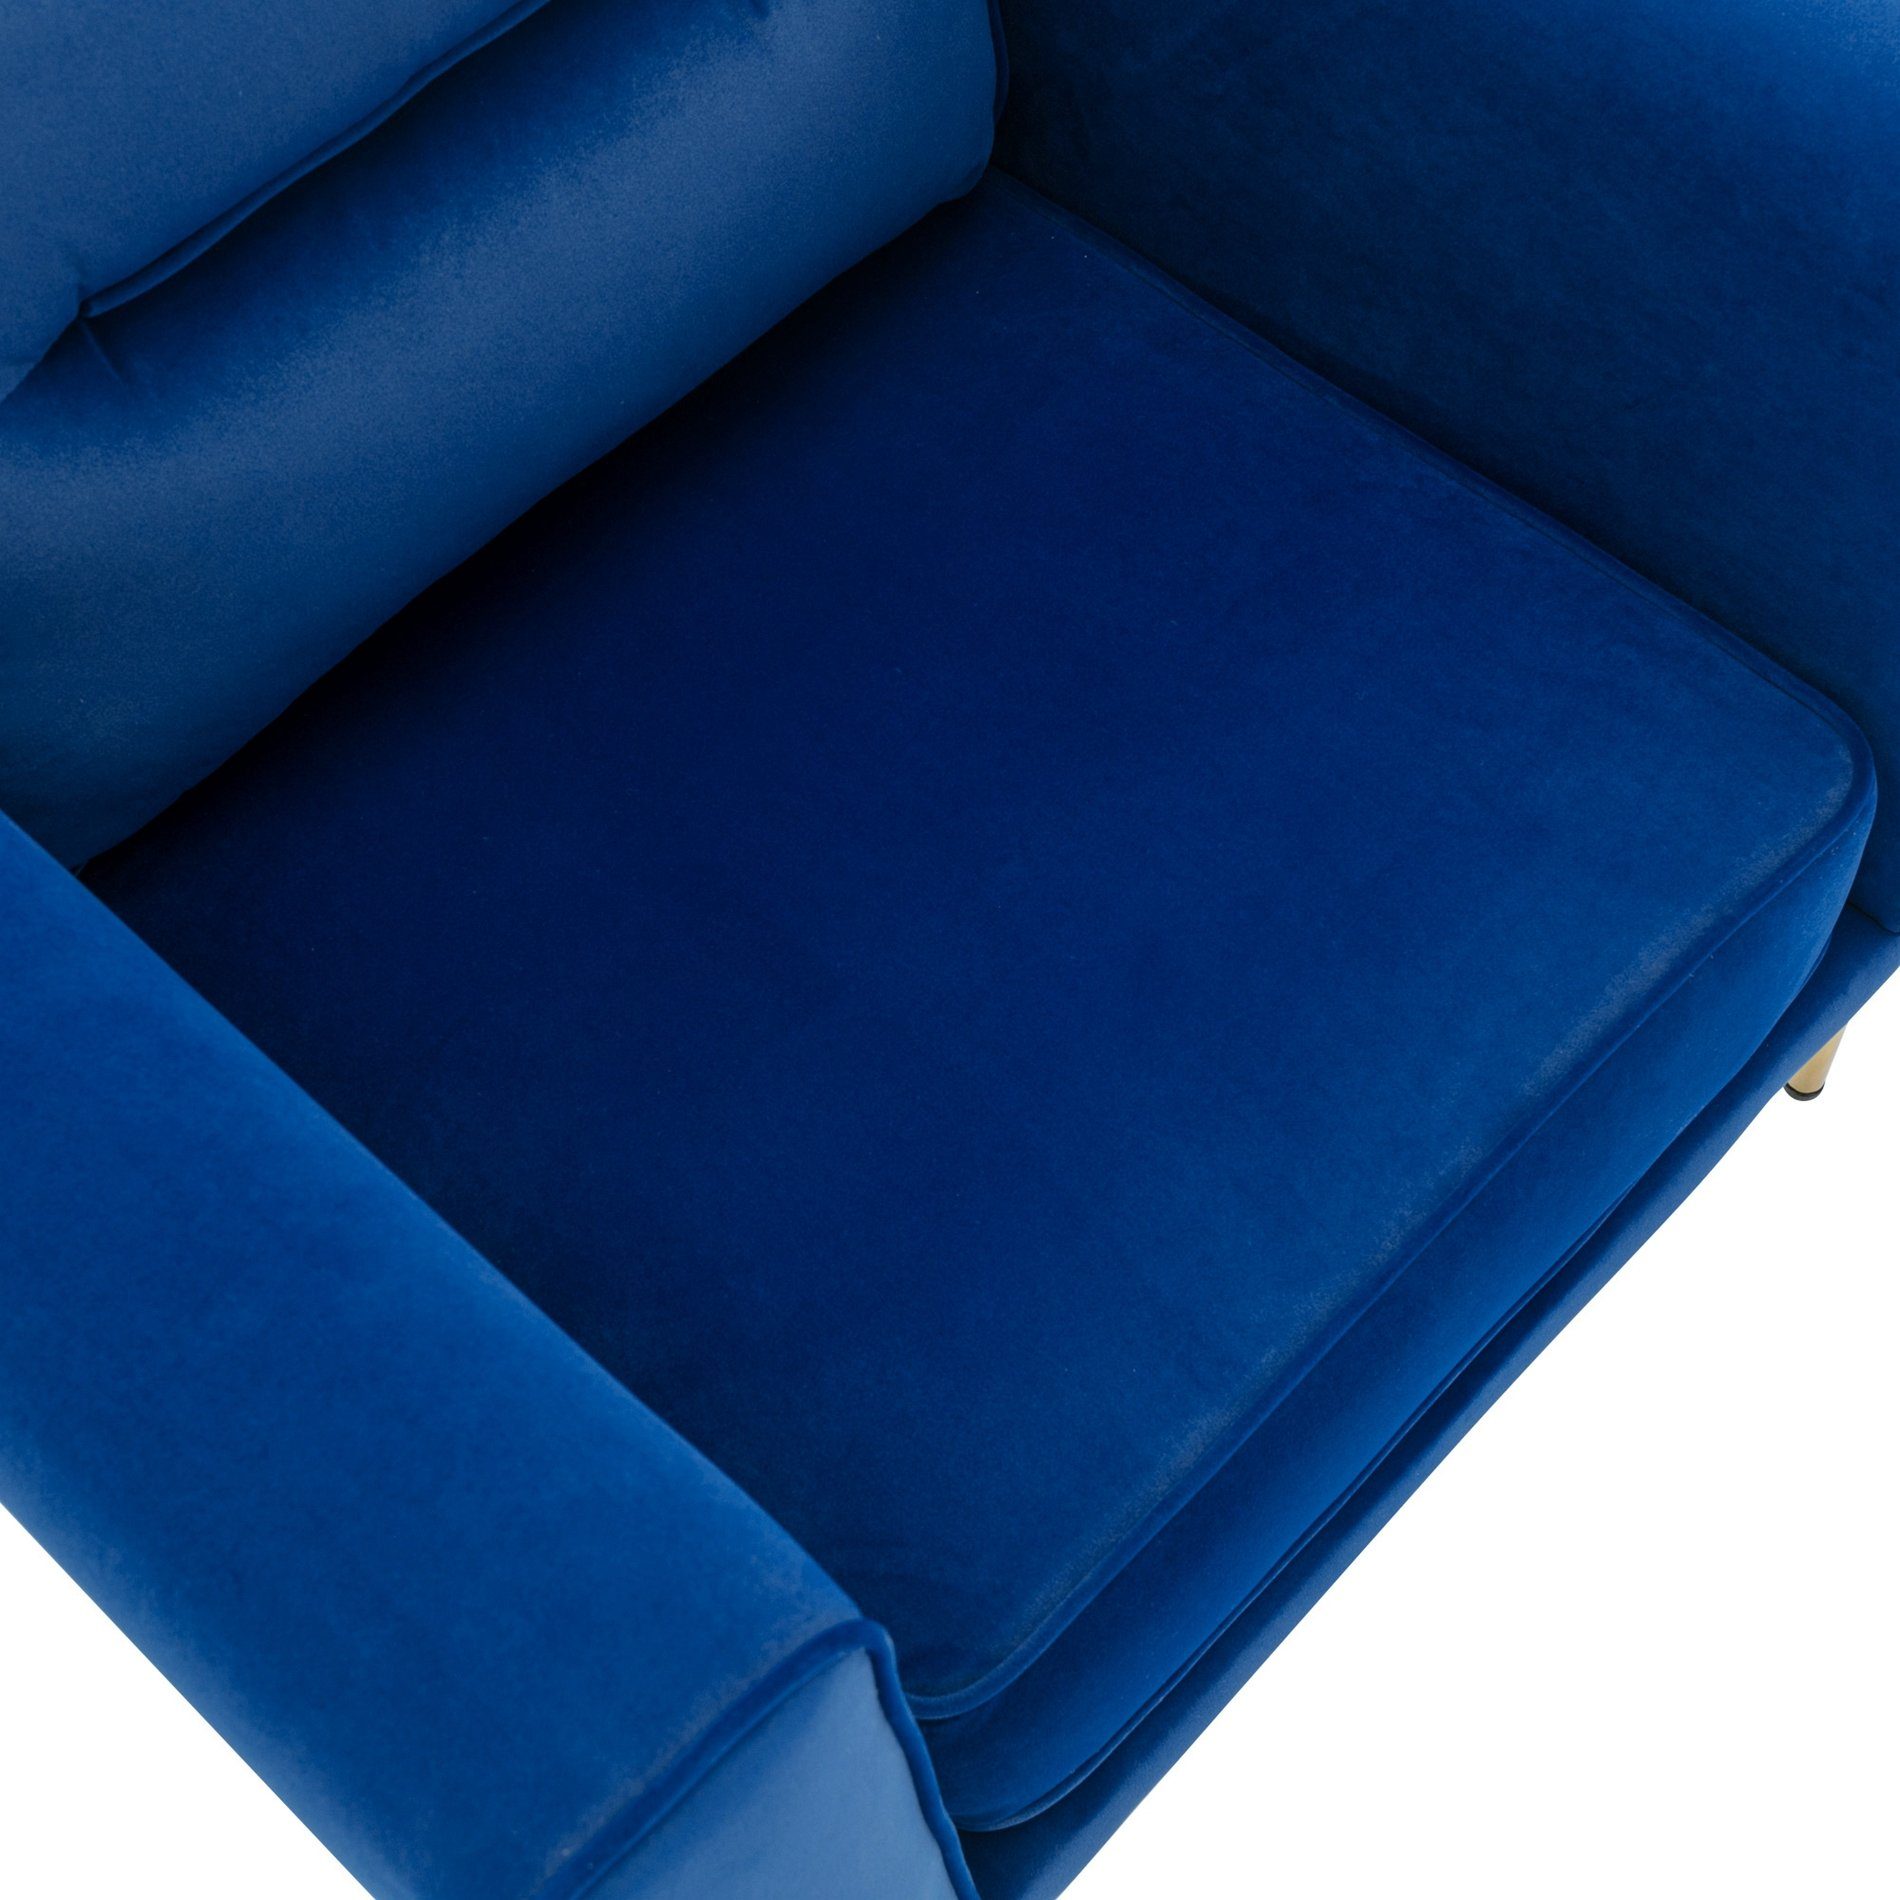 Sofastuhl, blau Moderner Celya Sessel, Stuhl einzelner Loungesessel gepolsterter Samtstuhl,